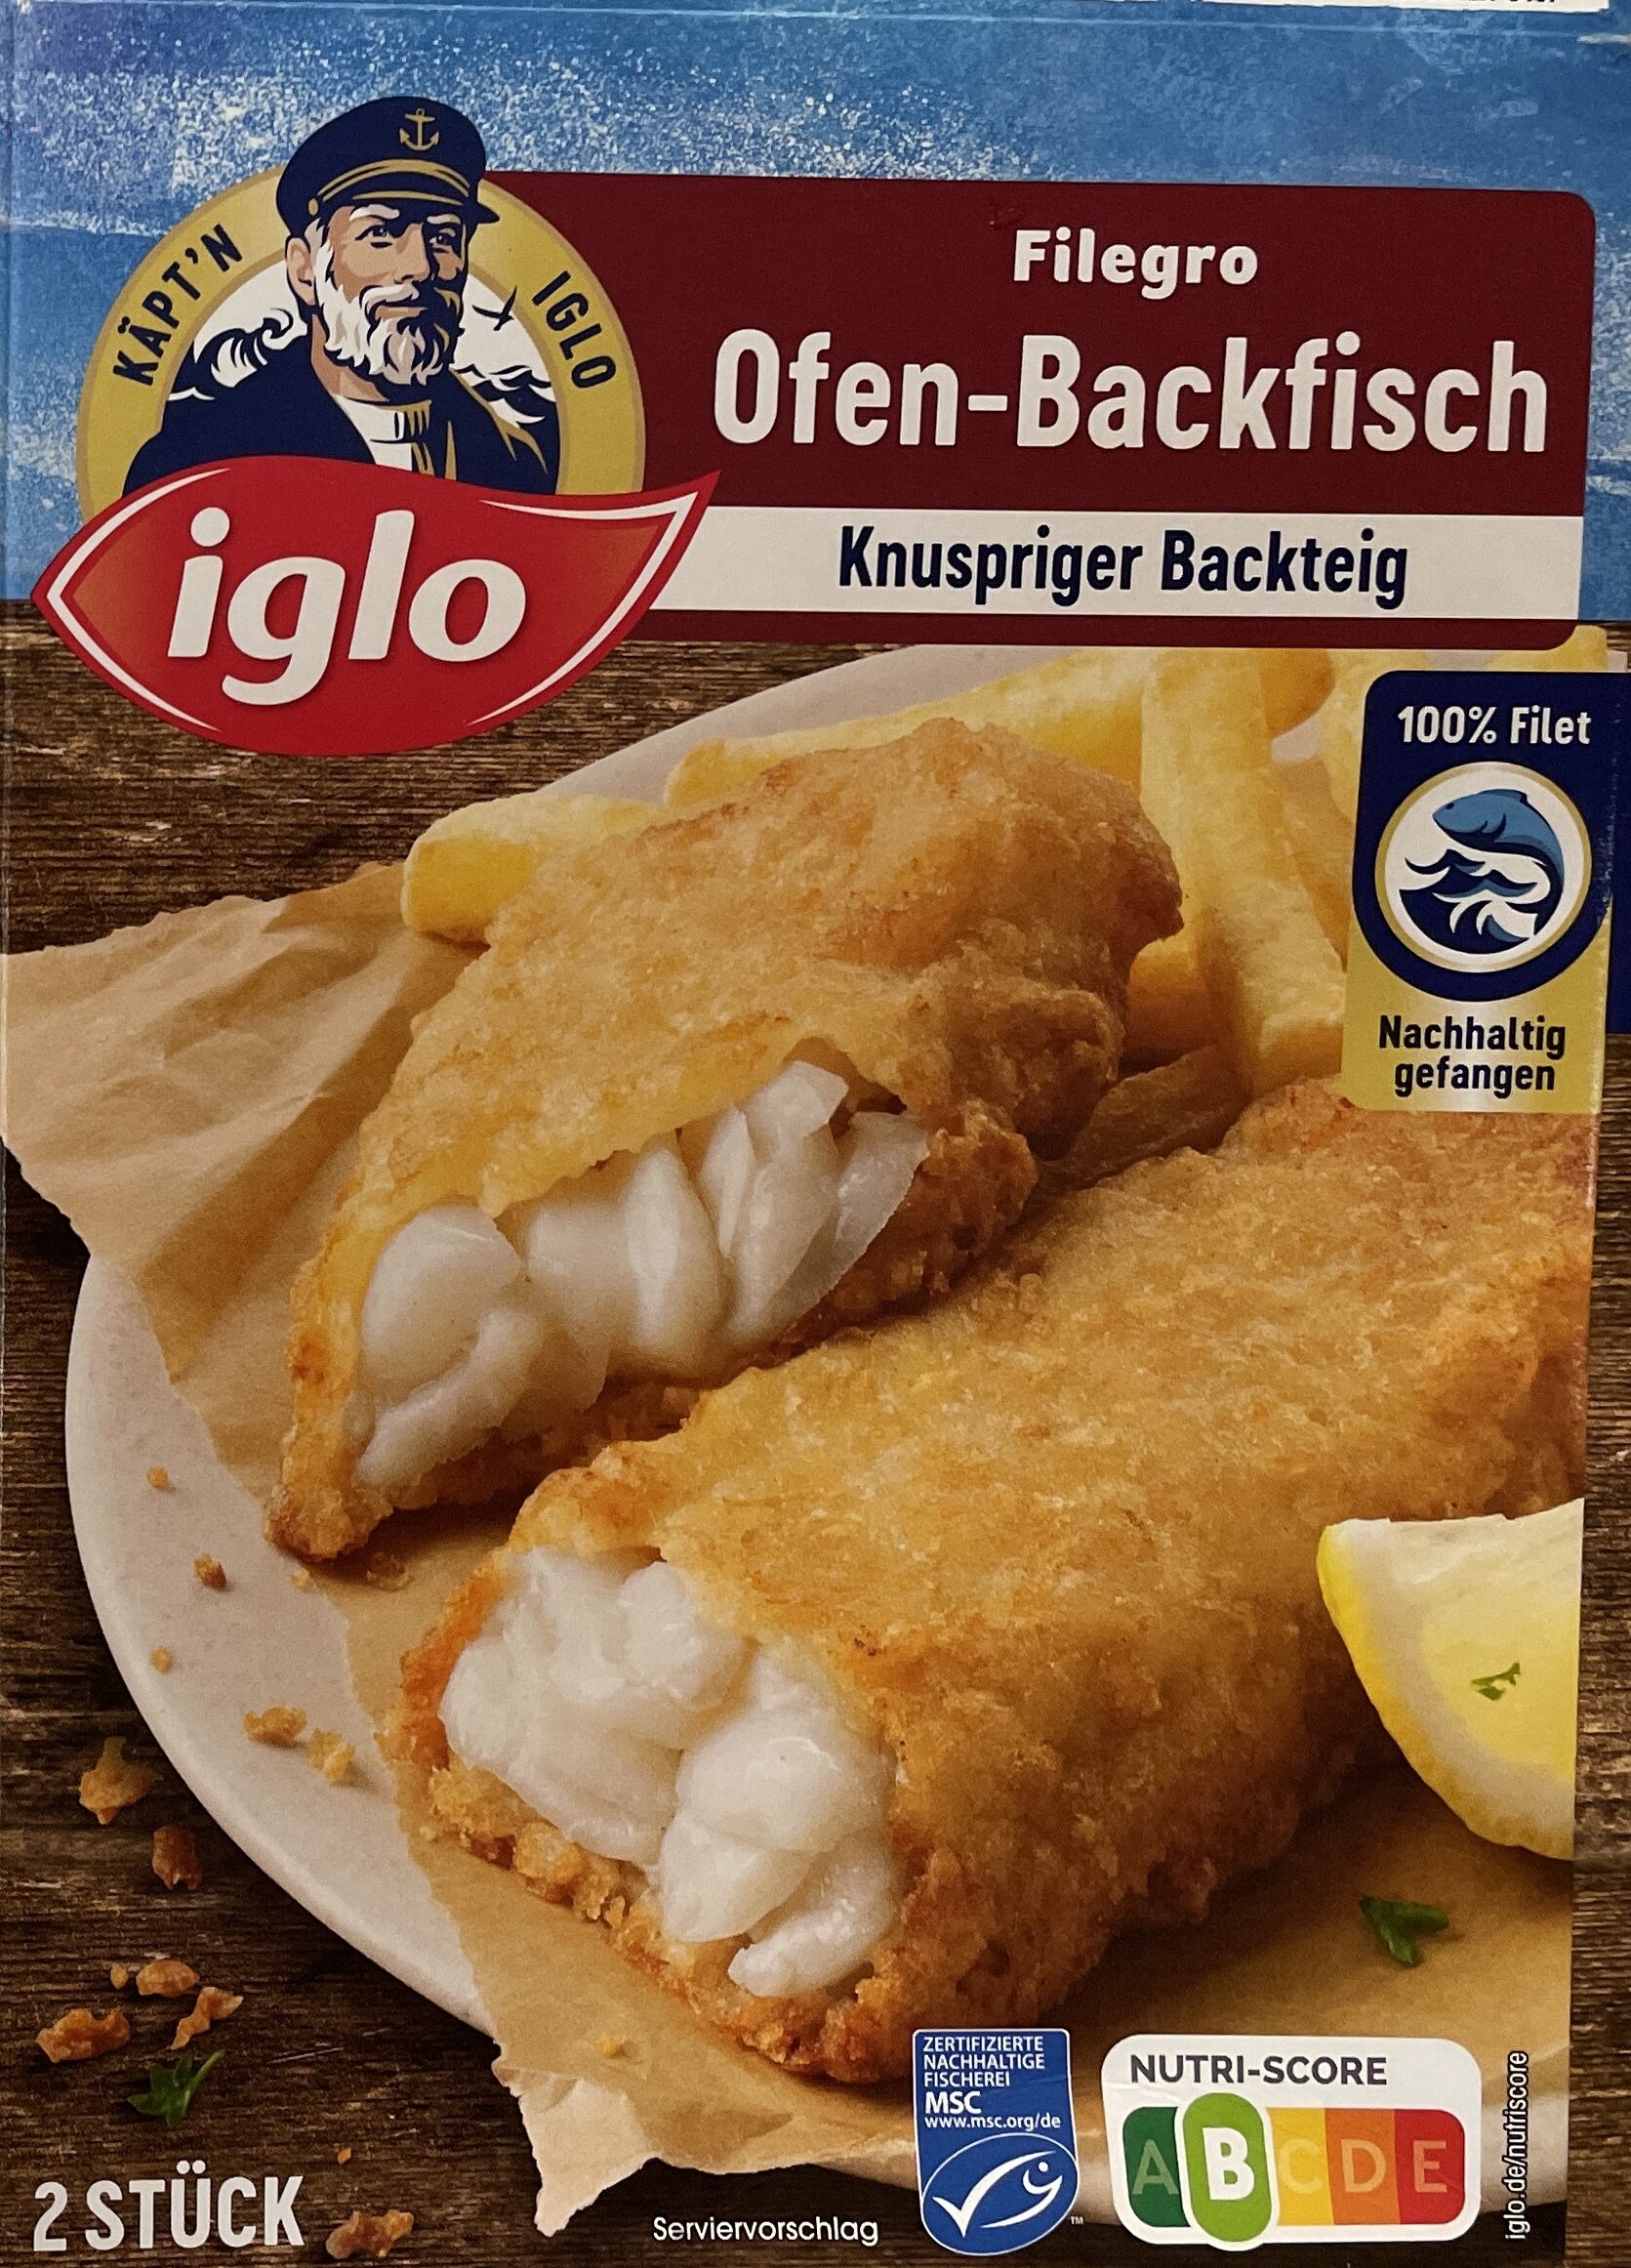 Filegro Ofen-Backfisch - Produkt - de